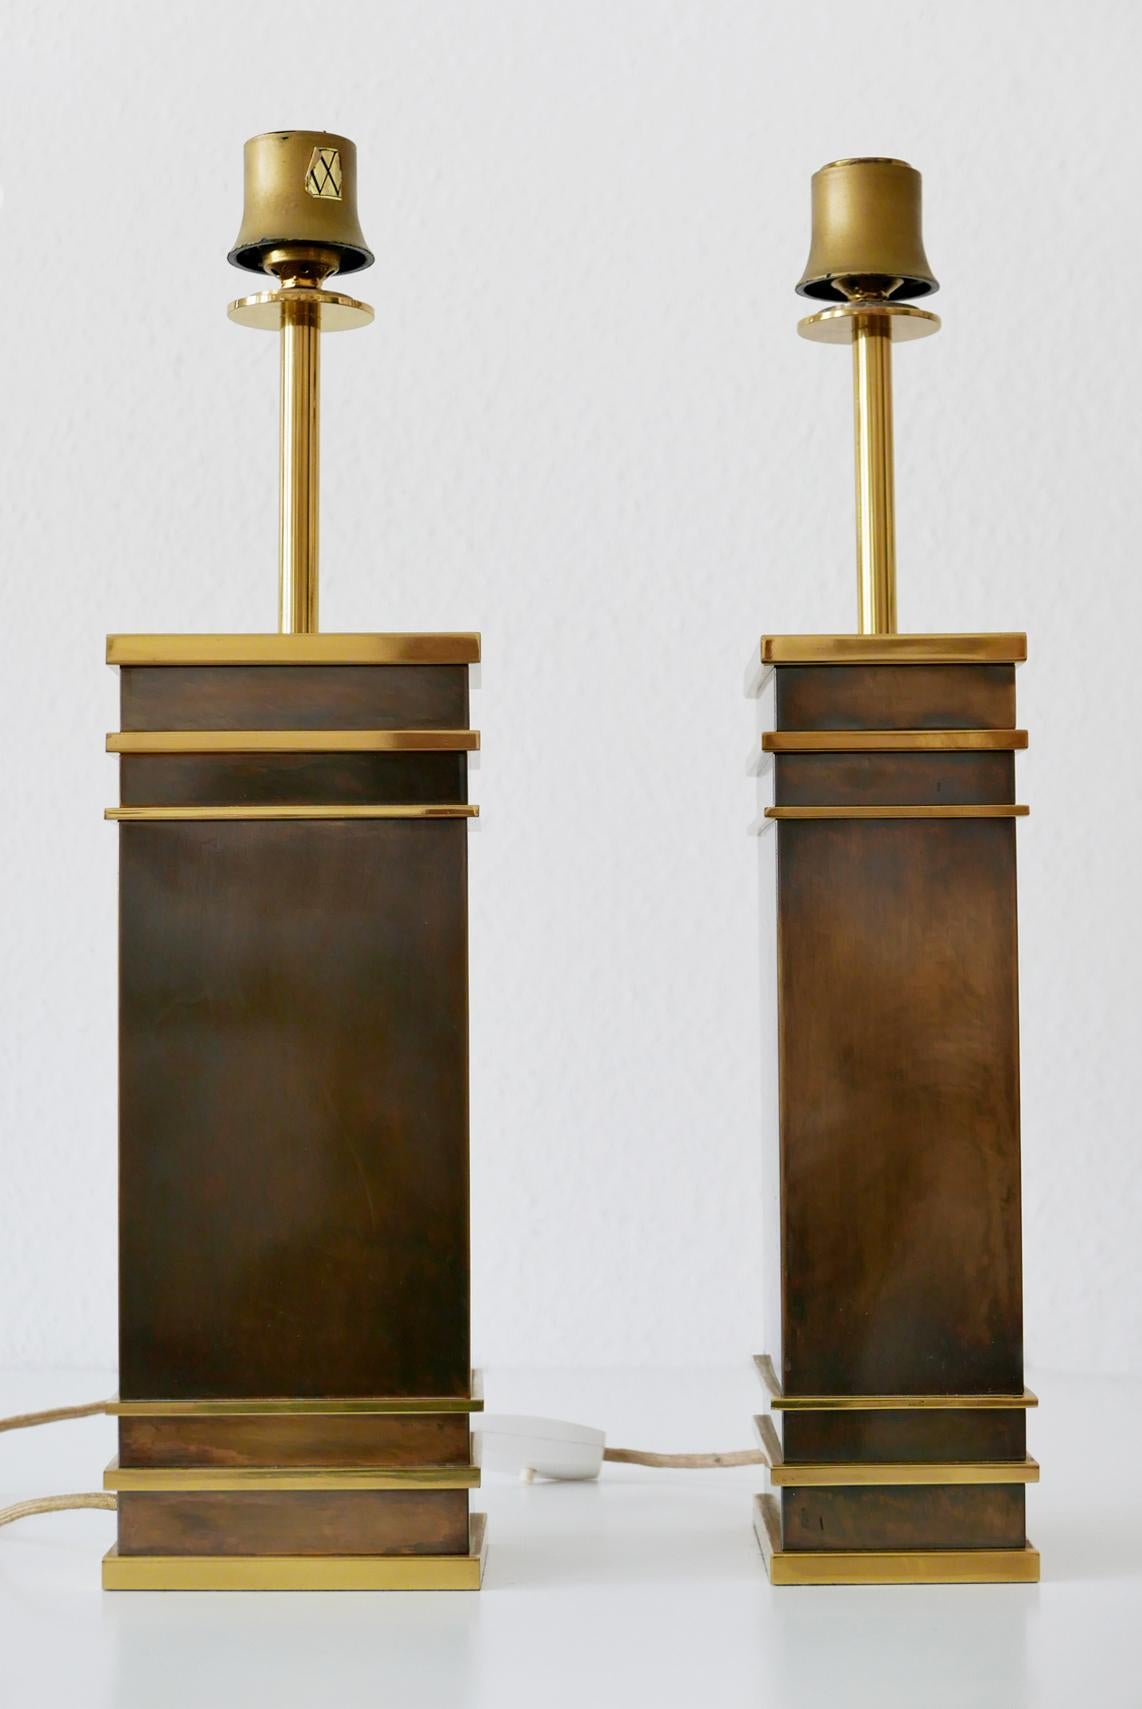 Satz von zwei monumentalen und äußerst seltenen Mid-Century Modern Tischlampen aus schwerem, massivem Messing. Entworfen und hergestellt von den Vereinigten Werkstätten, 1960er Jahre, Deutschland. Eine Lampe mit Herstellermarke.

Diese skulpturalen